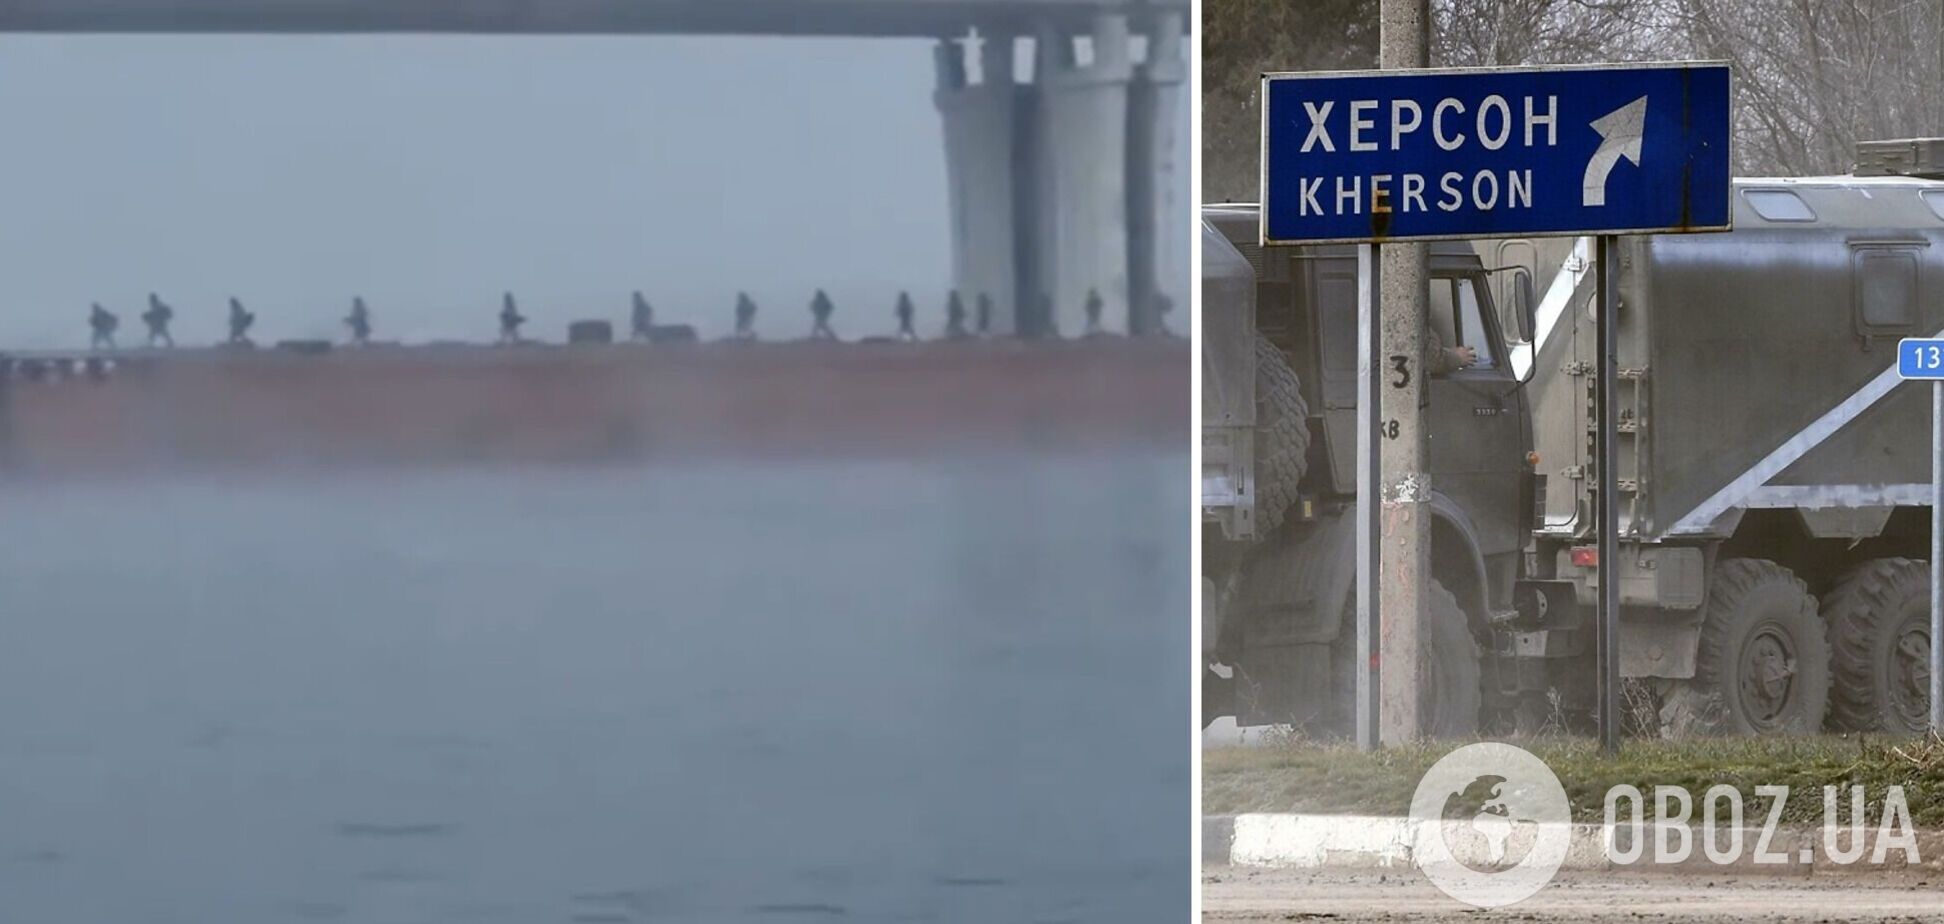 'Отрицательное наступление': в сети появились кадры побега российских оккупантов из Херсона. Видео